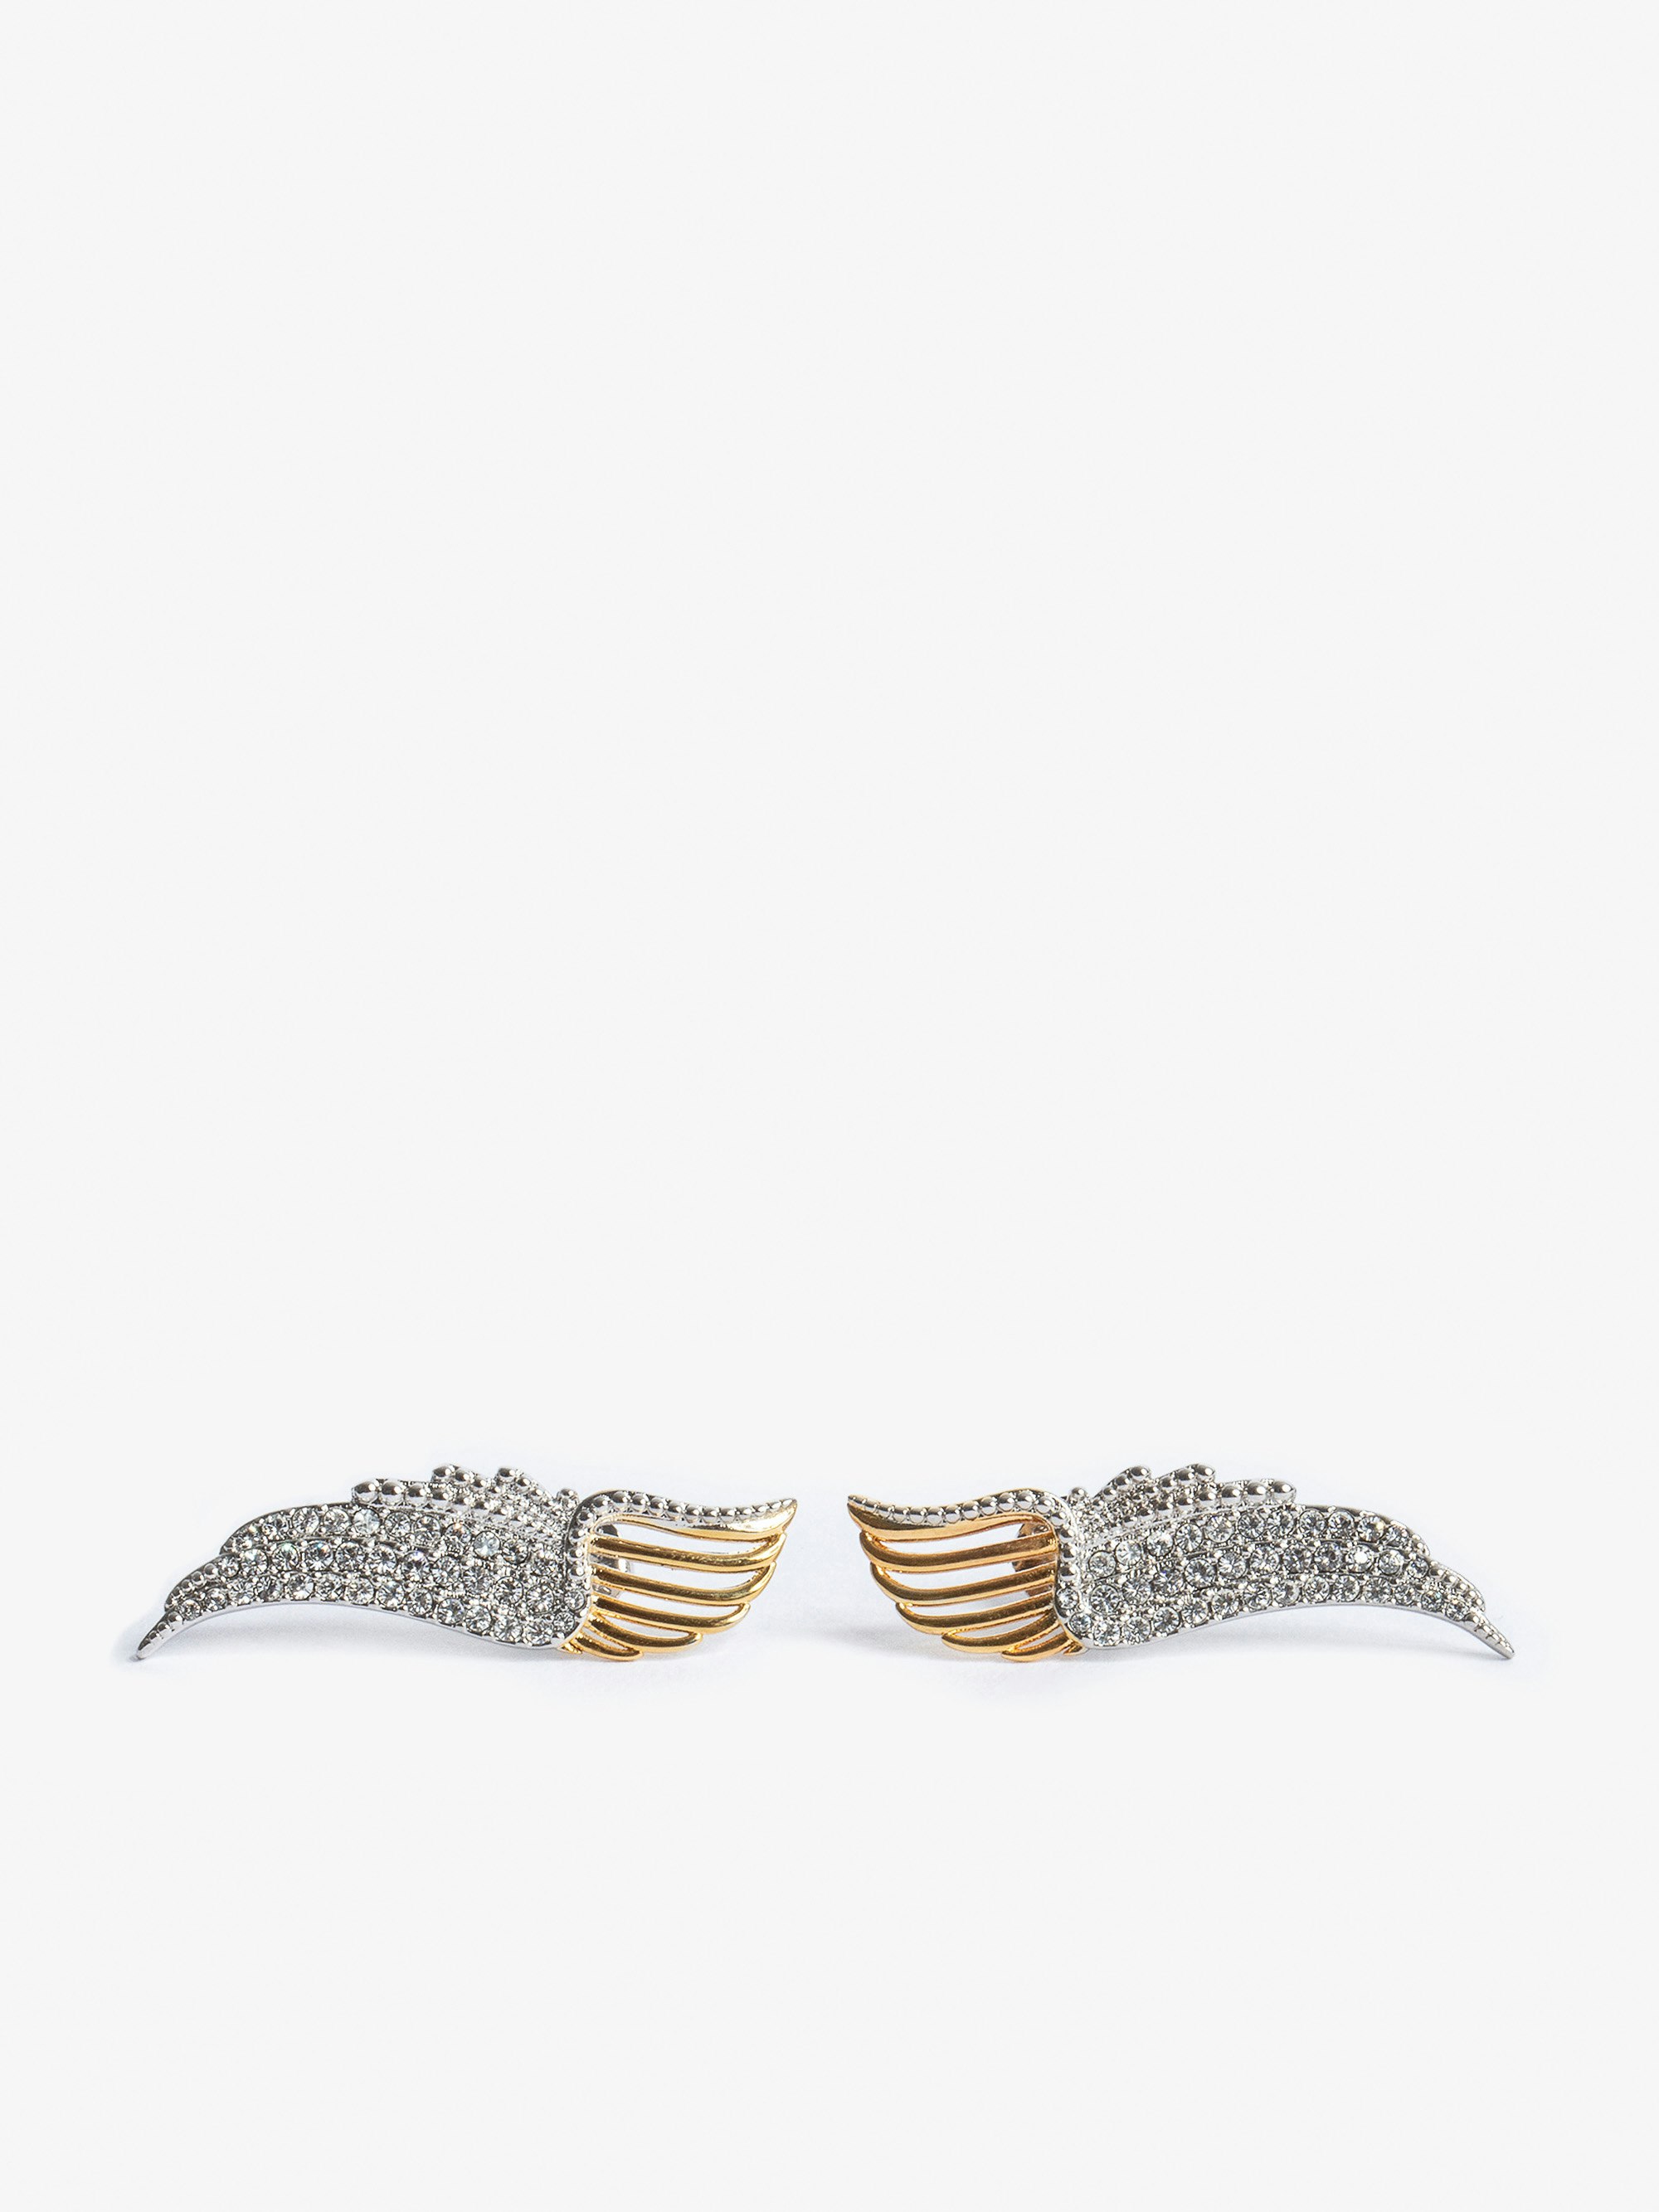 Boucle D'oreilles Rock Over - Boucles d'oreilles en forme d'ailes en métal doré et serties de cristaux.